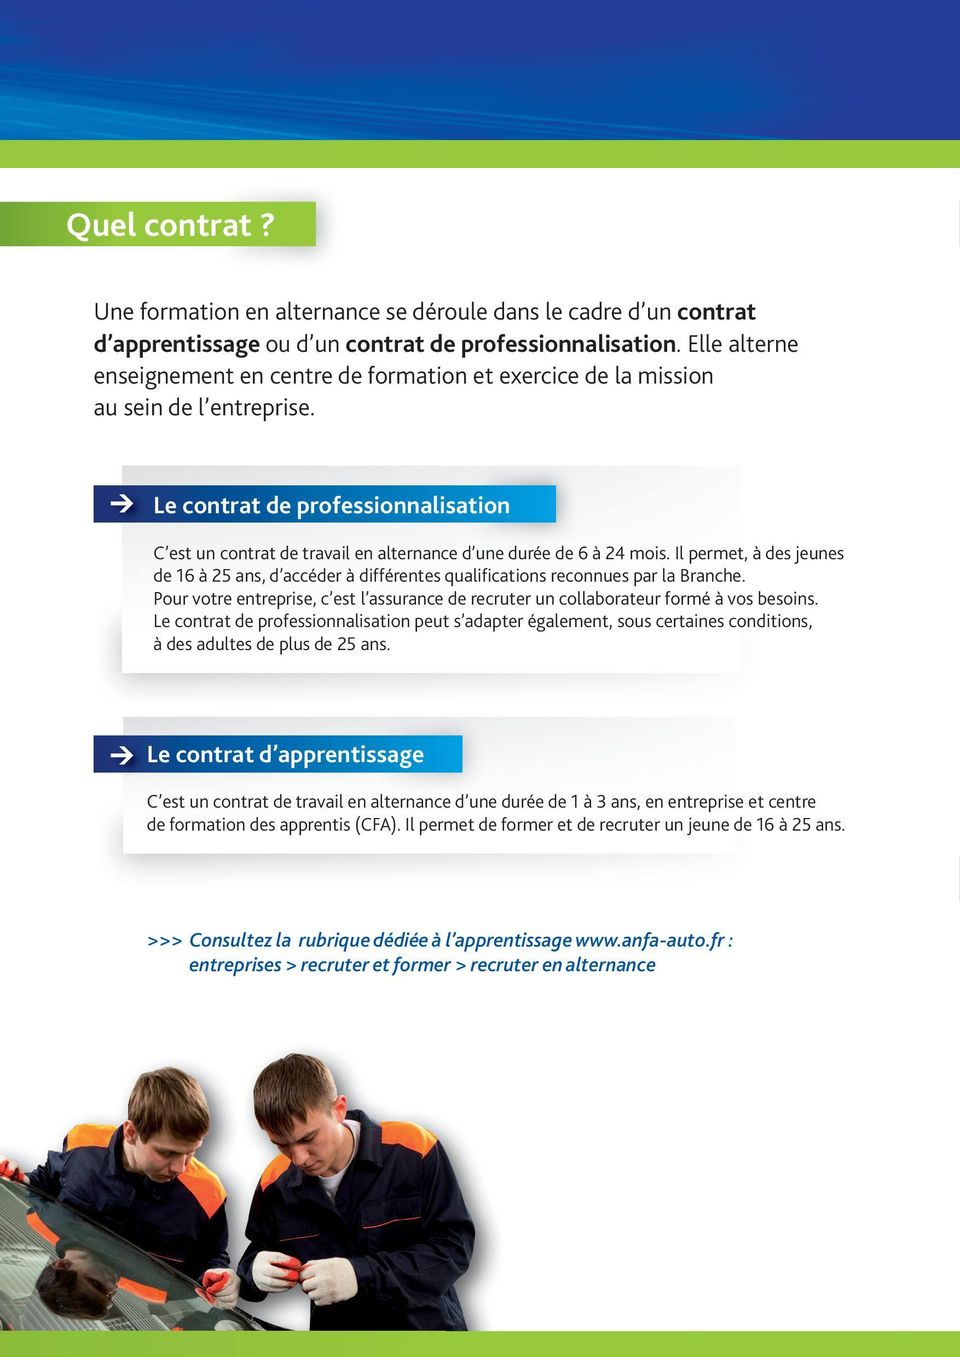 Le contrat de professionnalisation C est un contrat de travail en alternance d une durée de 6 à 24 mois.